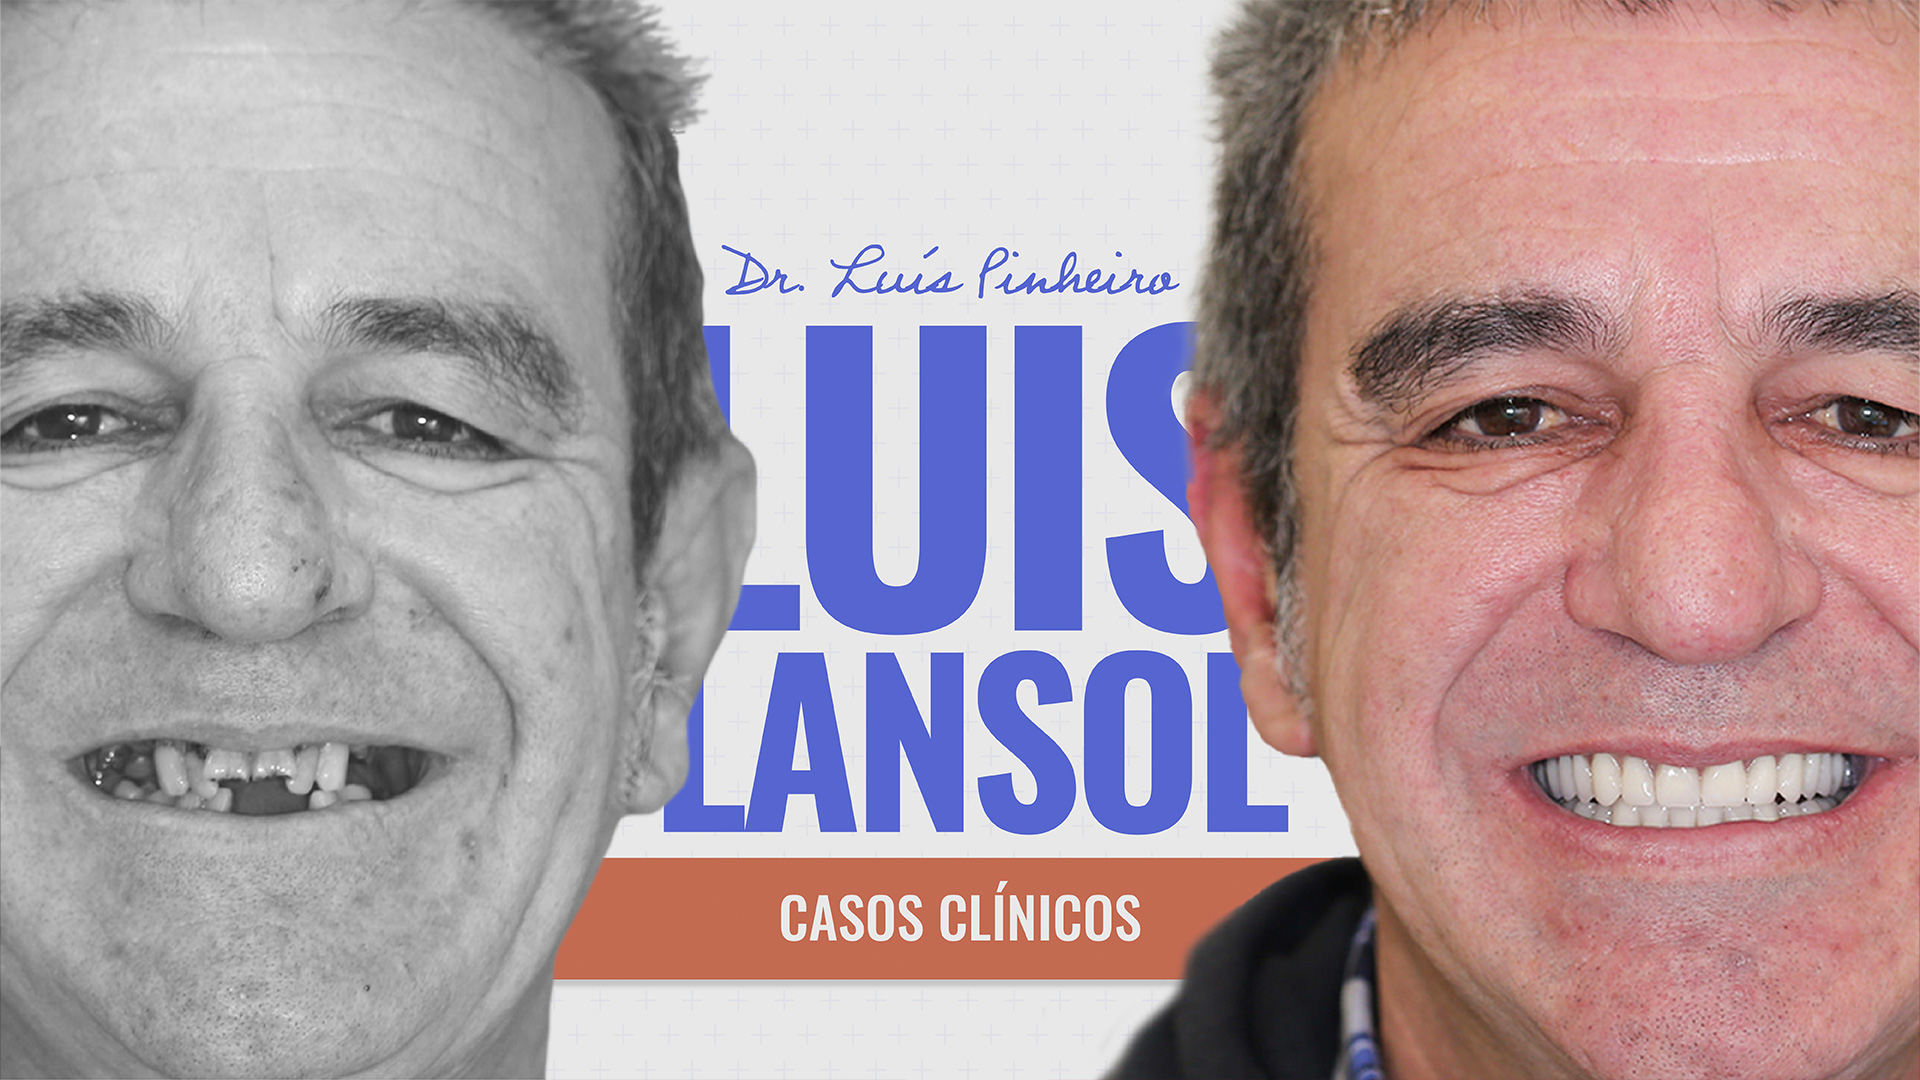 Caso Clínico – Luis Lansol